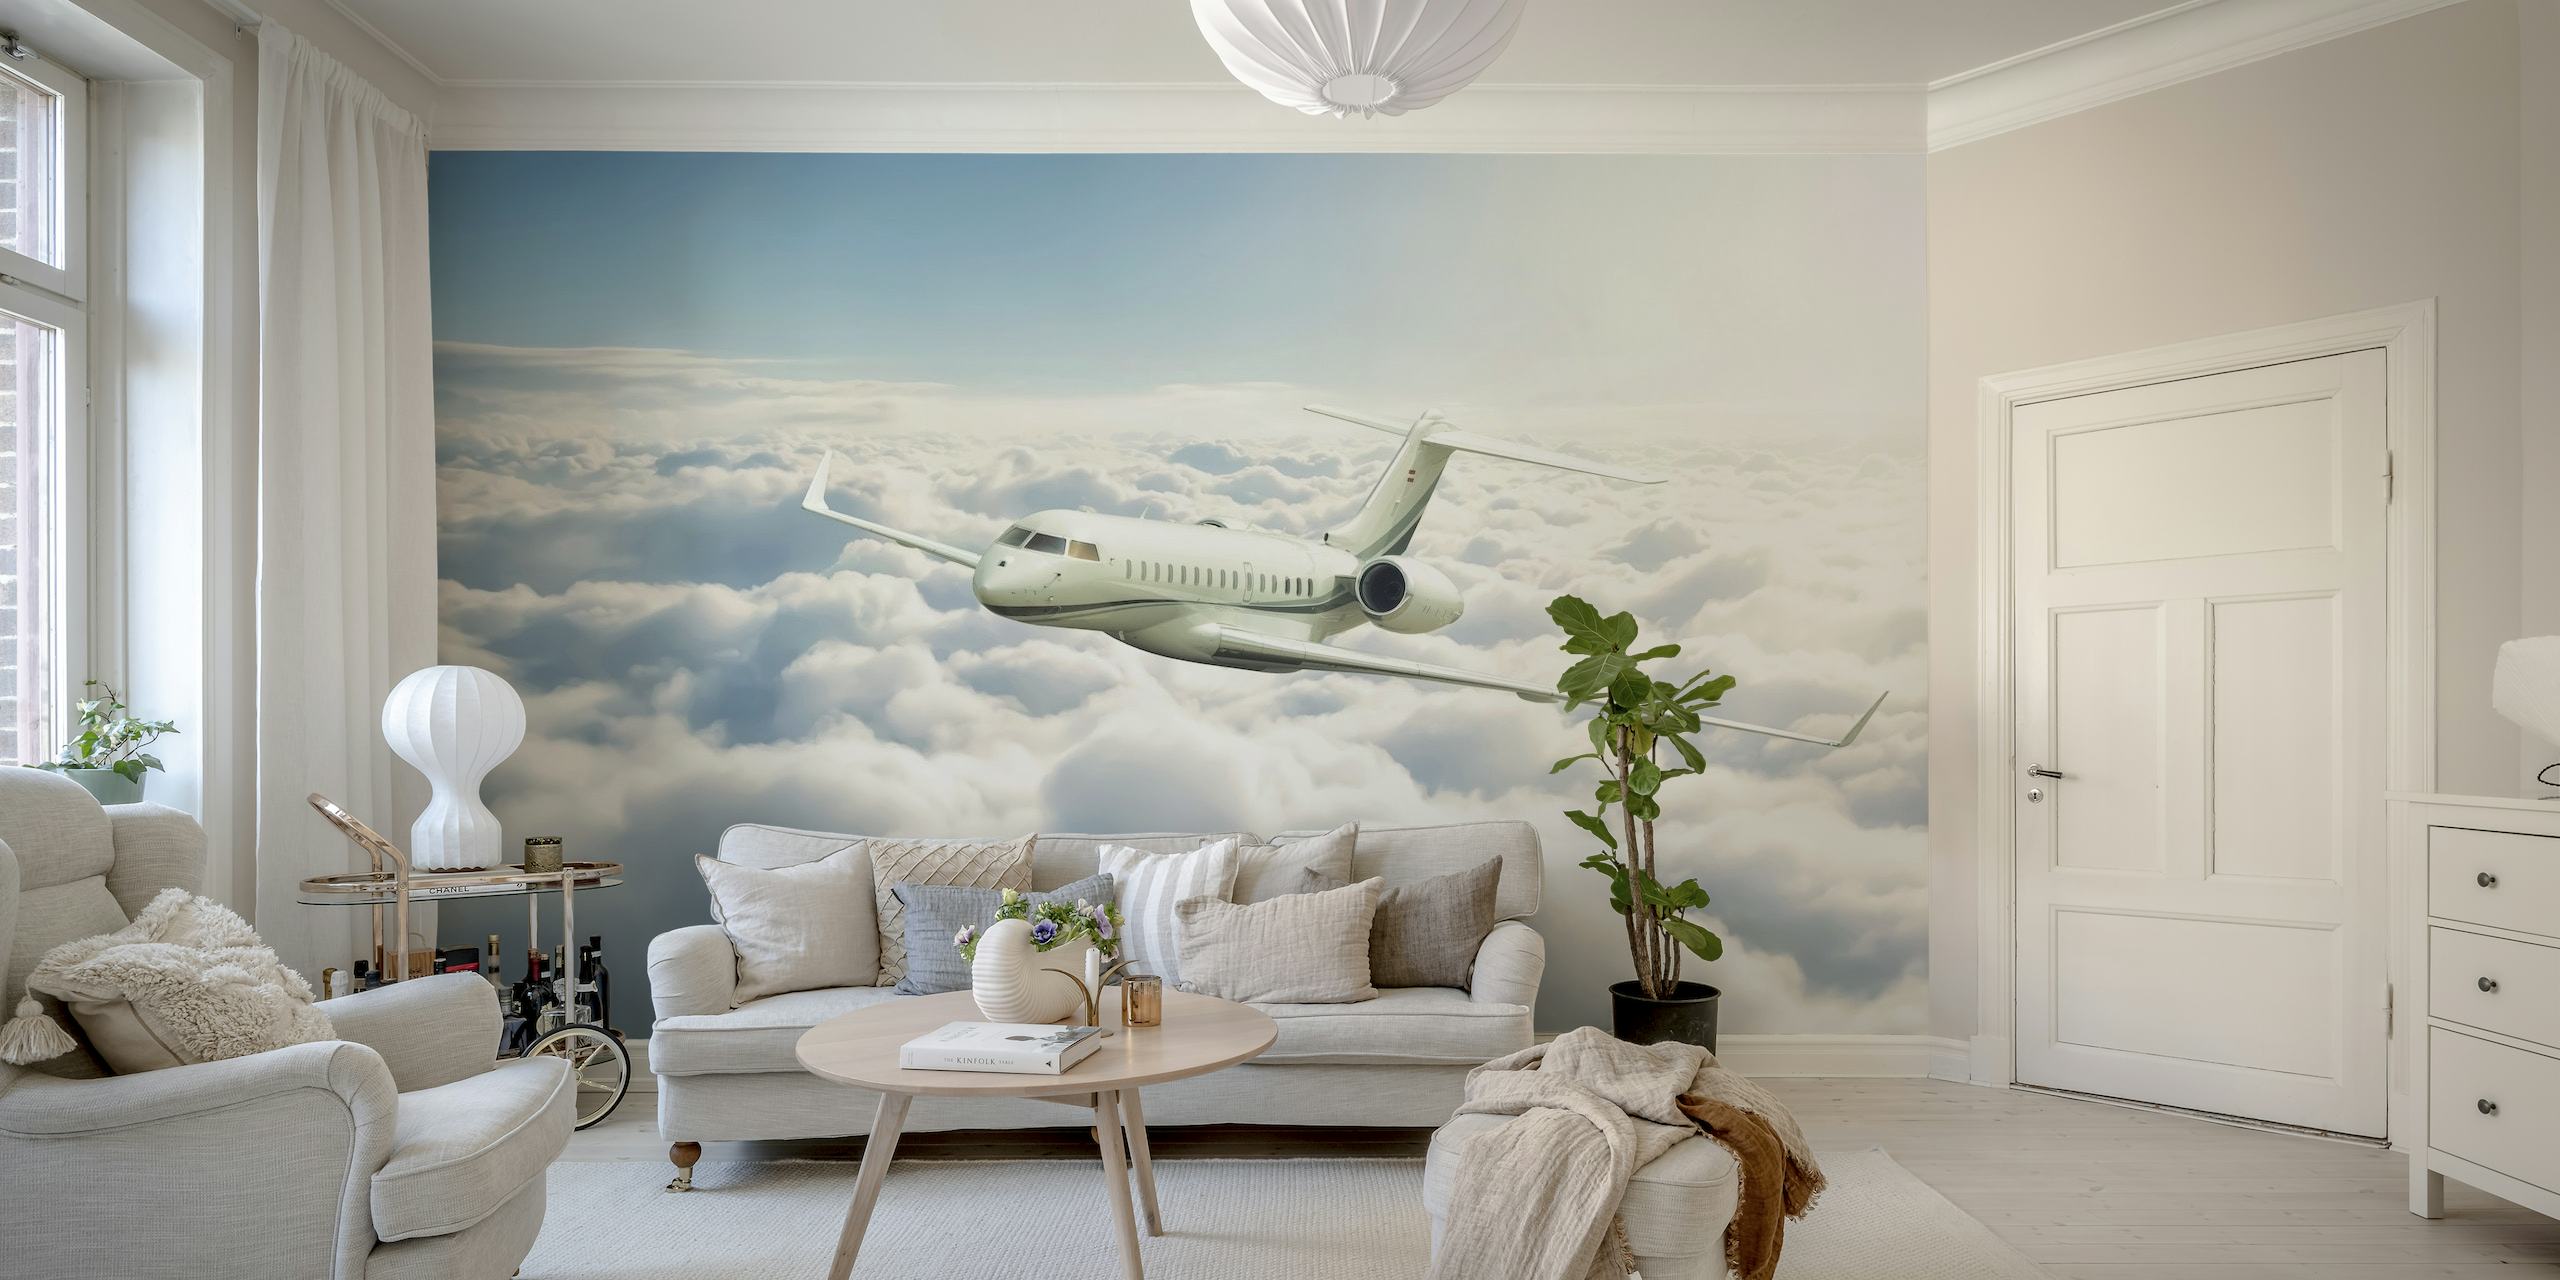 Privat jetfly som flyr over skyene veggmaleri